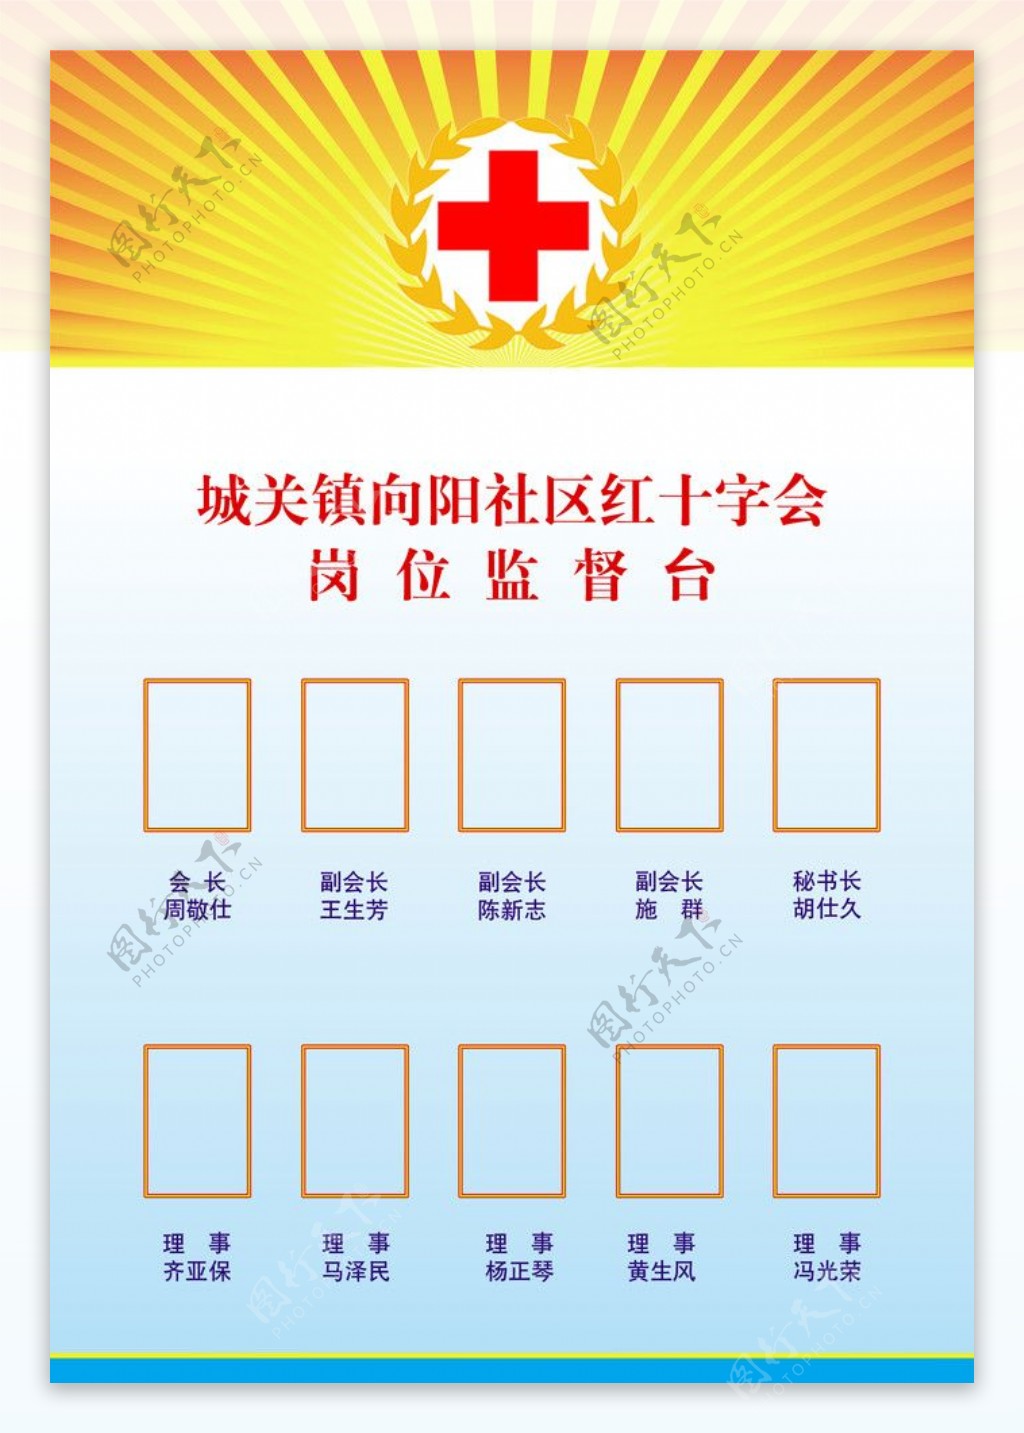 红红十字会社区红十字会岗位监督台岗位监督台图片